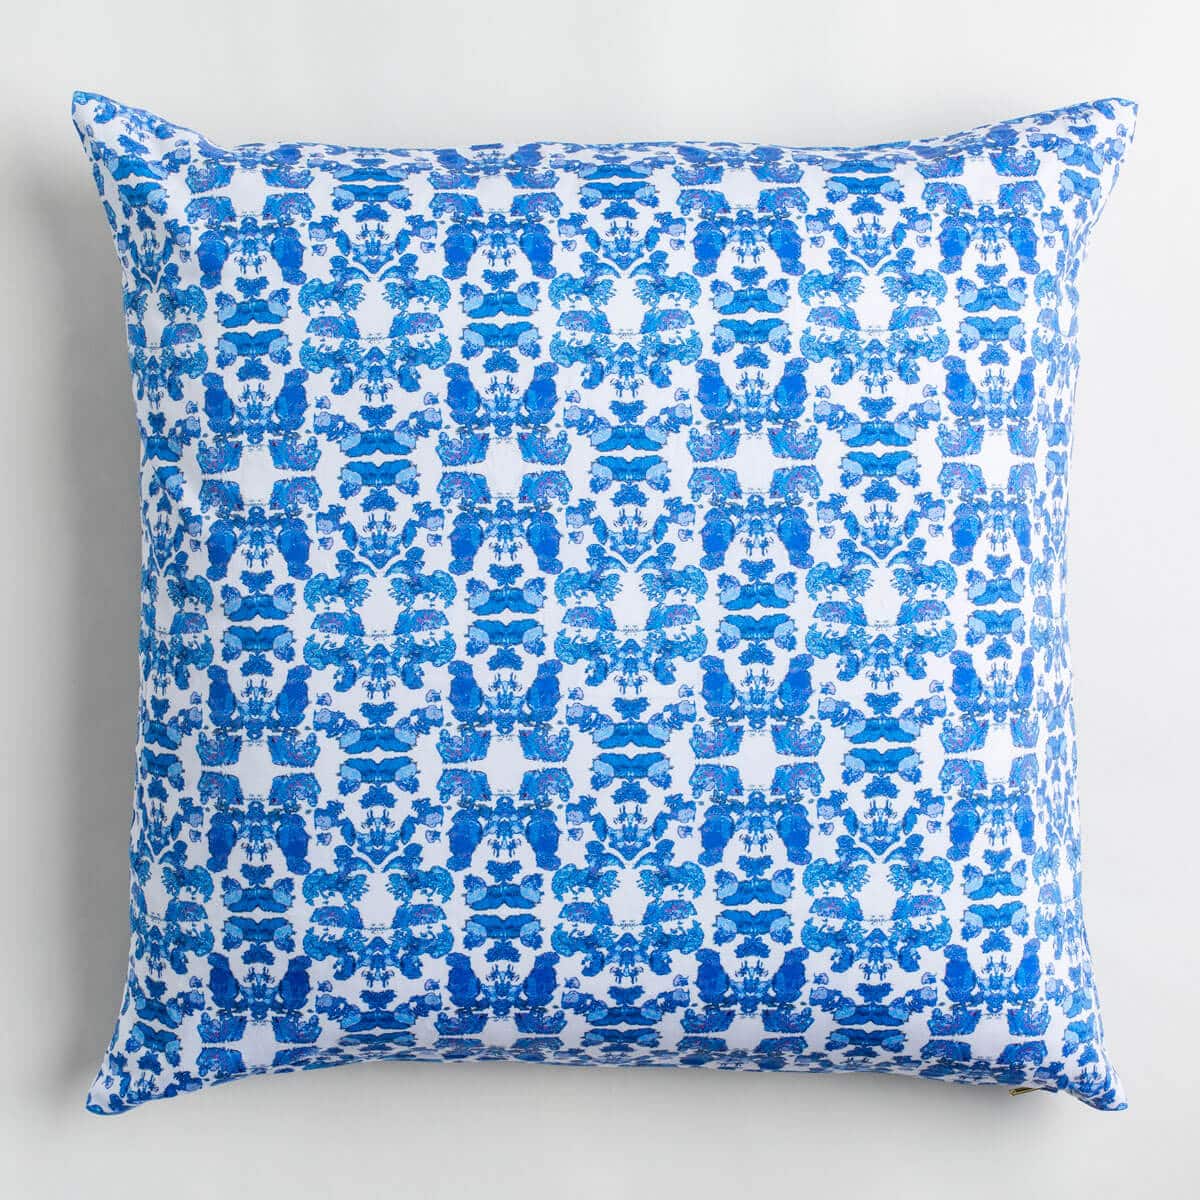 https://lindacabotdesign.com/wp-content/uploads/2018/10/Pillow-organic-cotton-artisan-handmade-farm-wool-luxury-abstract-floral-blue-brass-zipper-20-inch.jpg